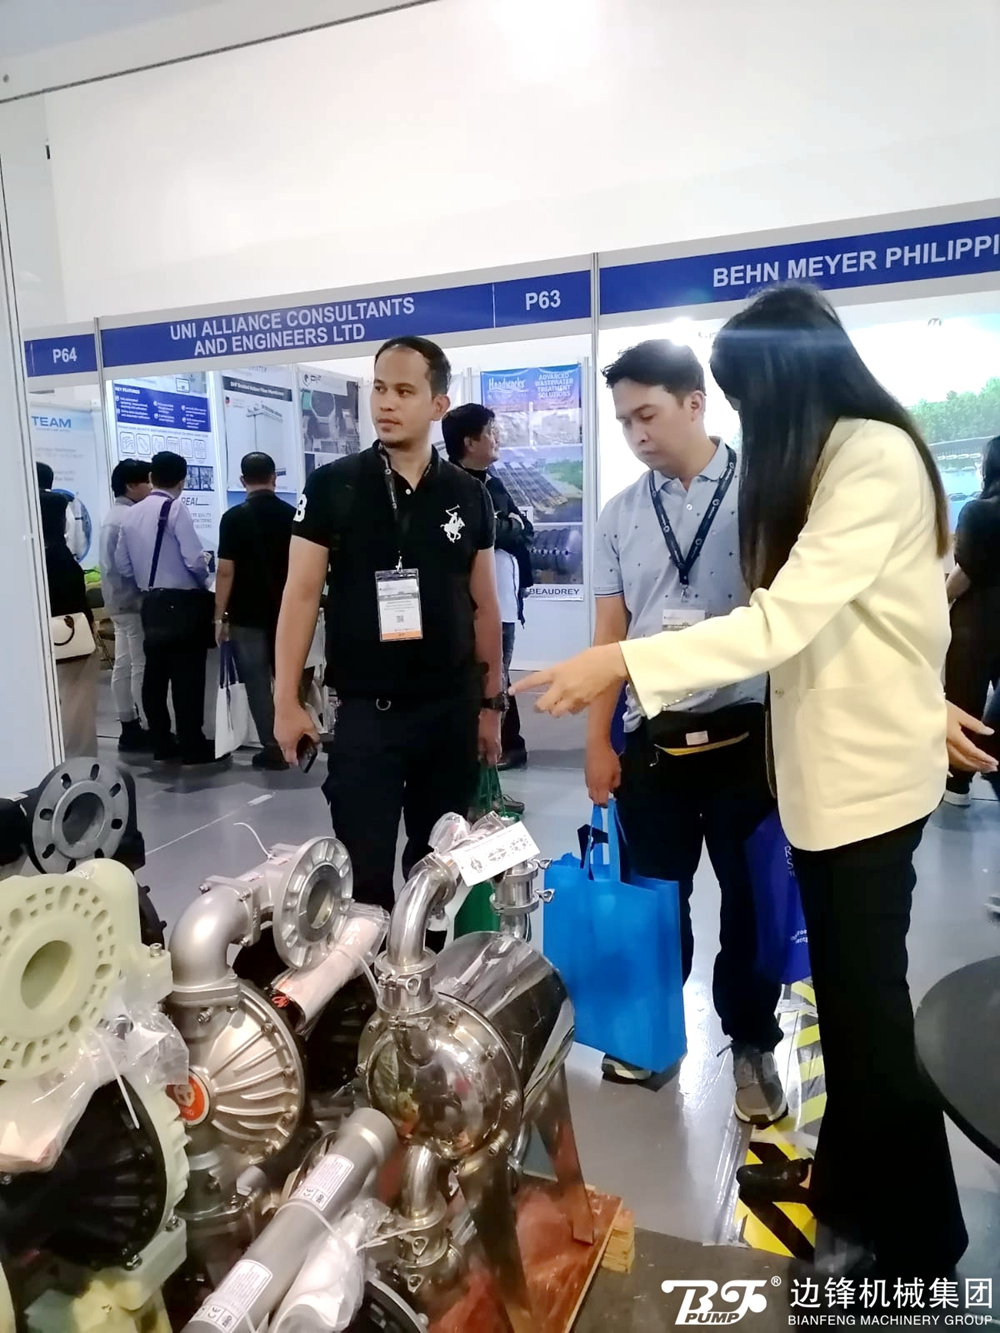 边锋机械集团亮相菲律宾马尼拉水处理展览会